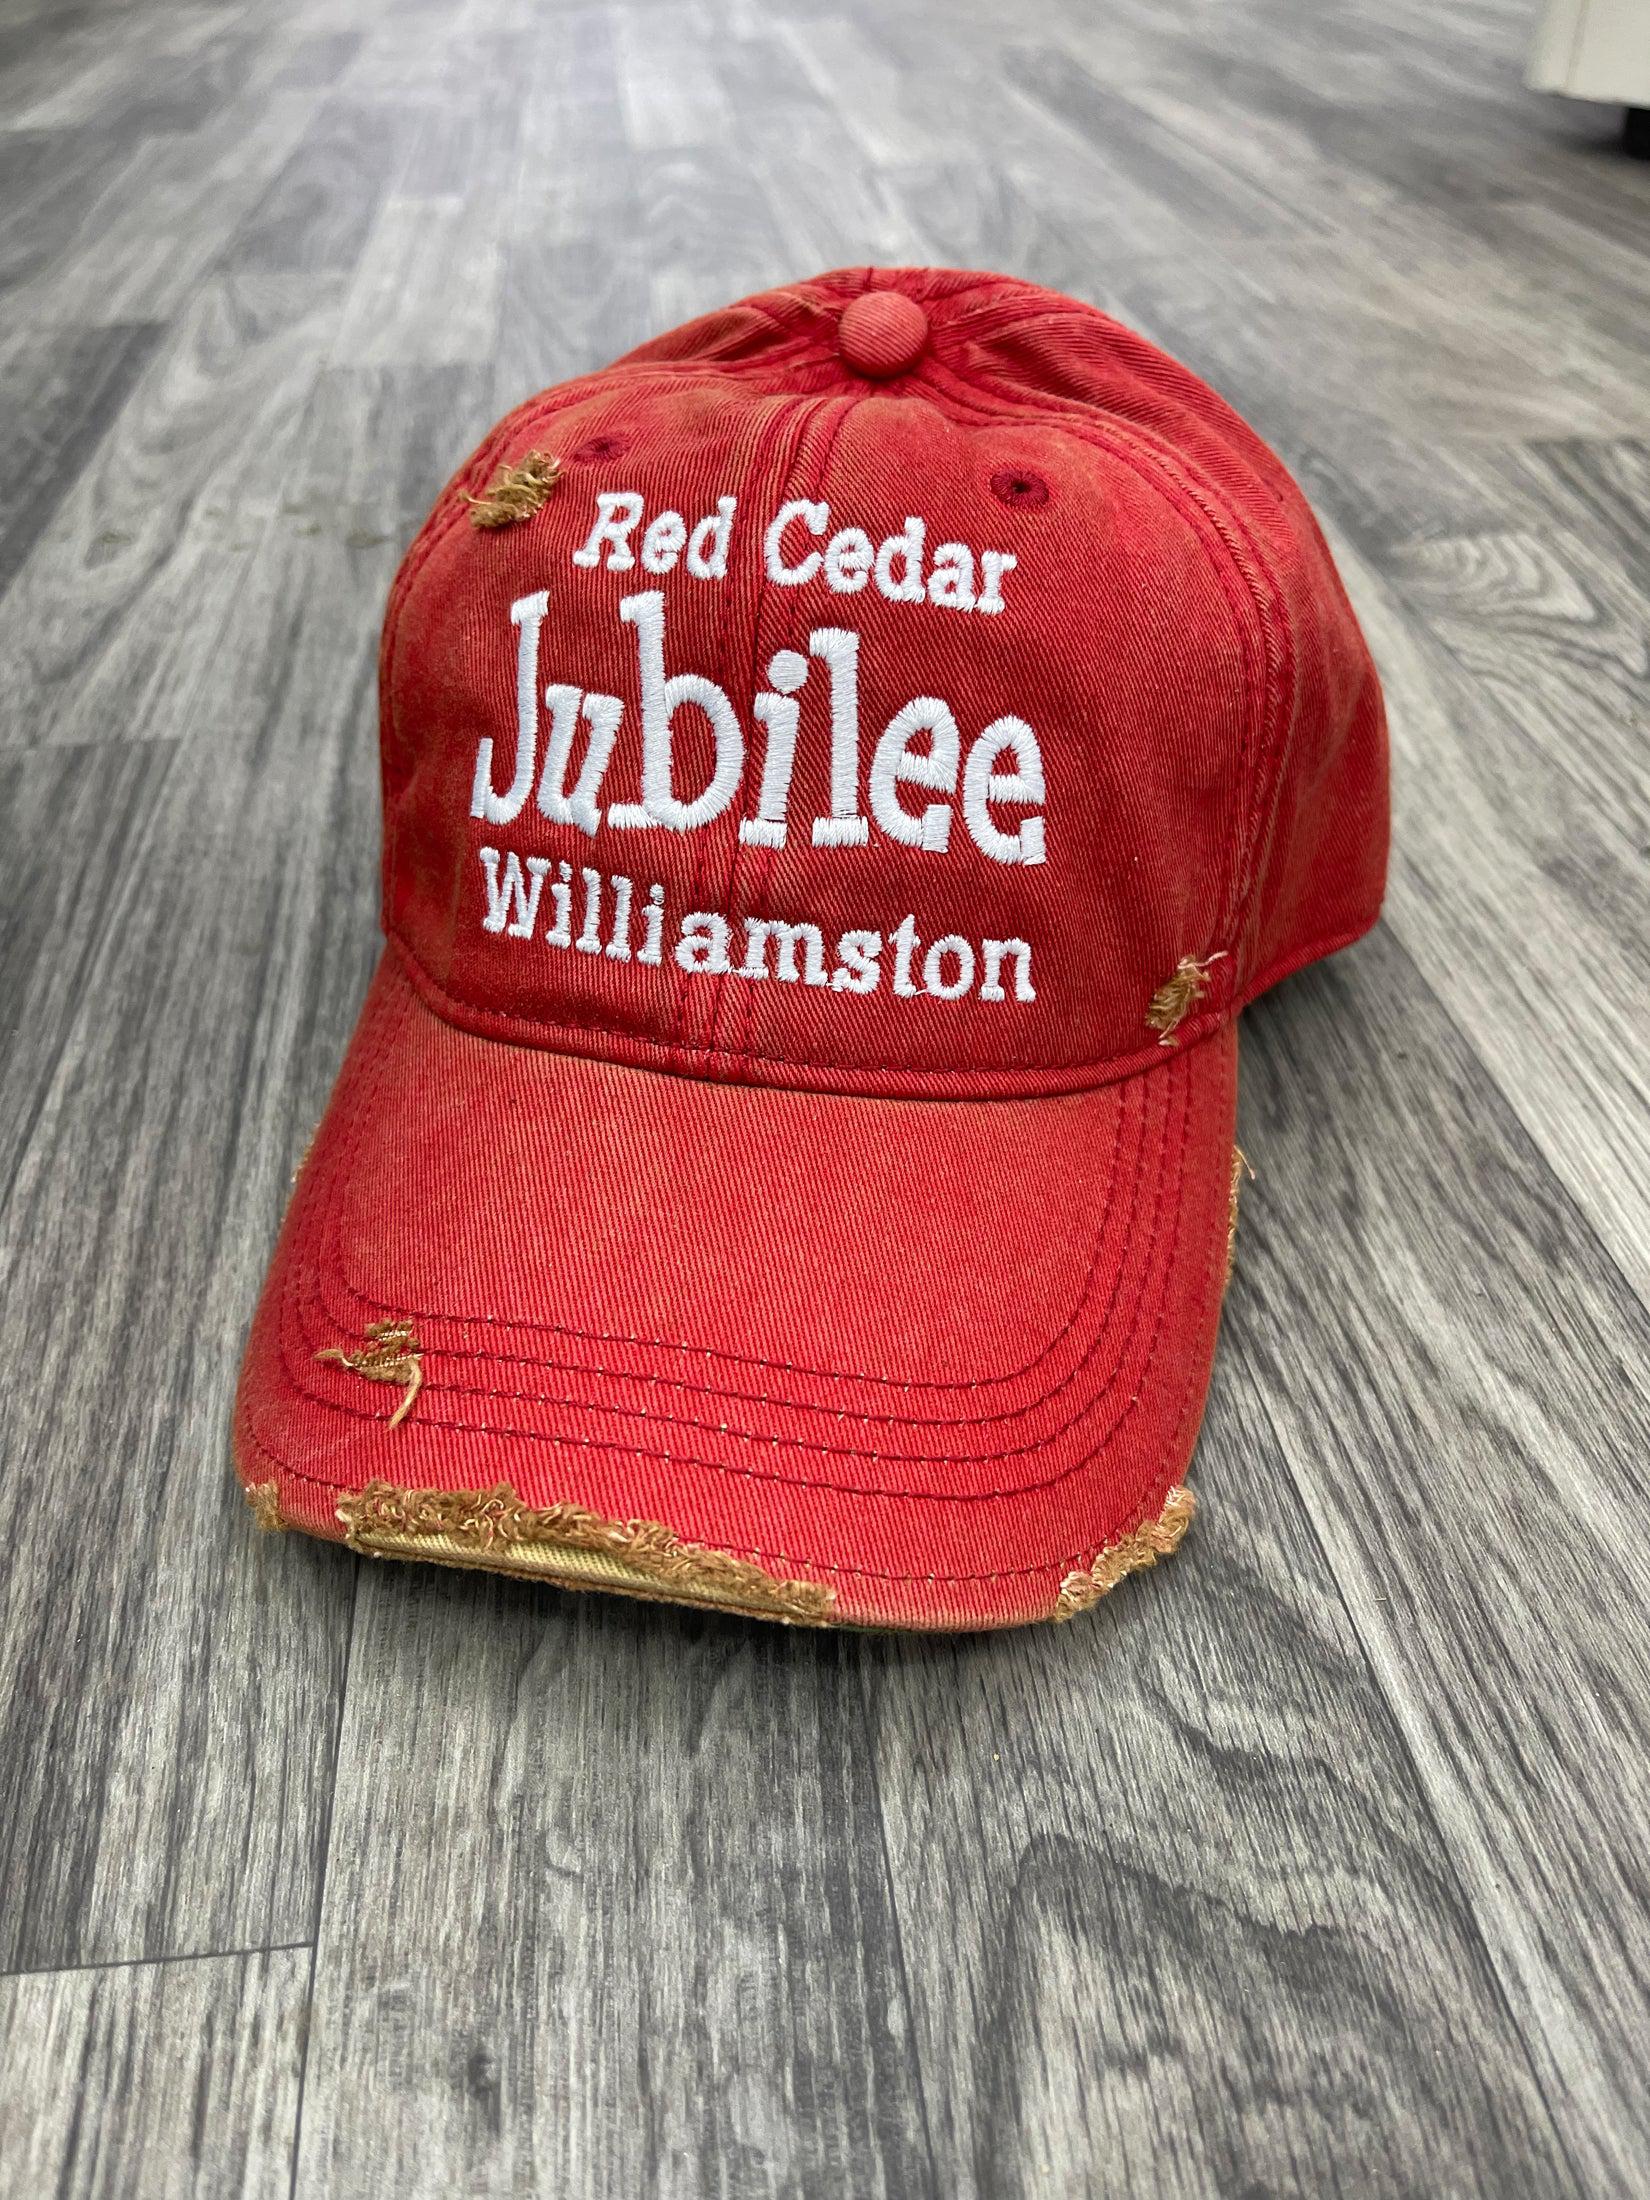 Red Cedar Jubilee - Fabric Strap - Hat